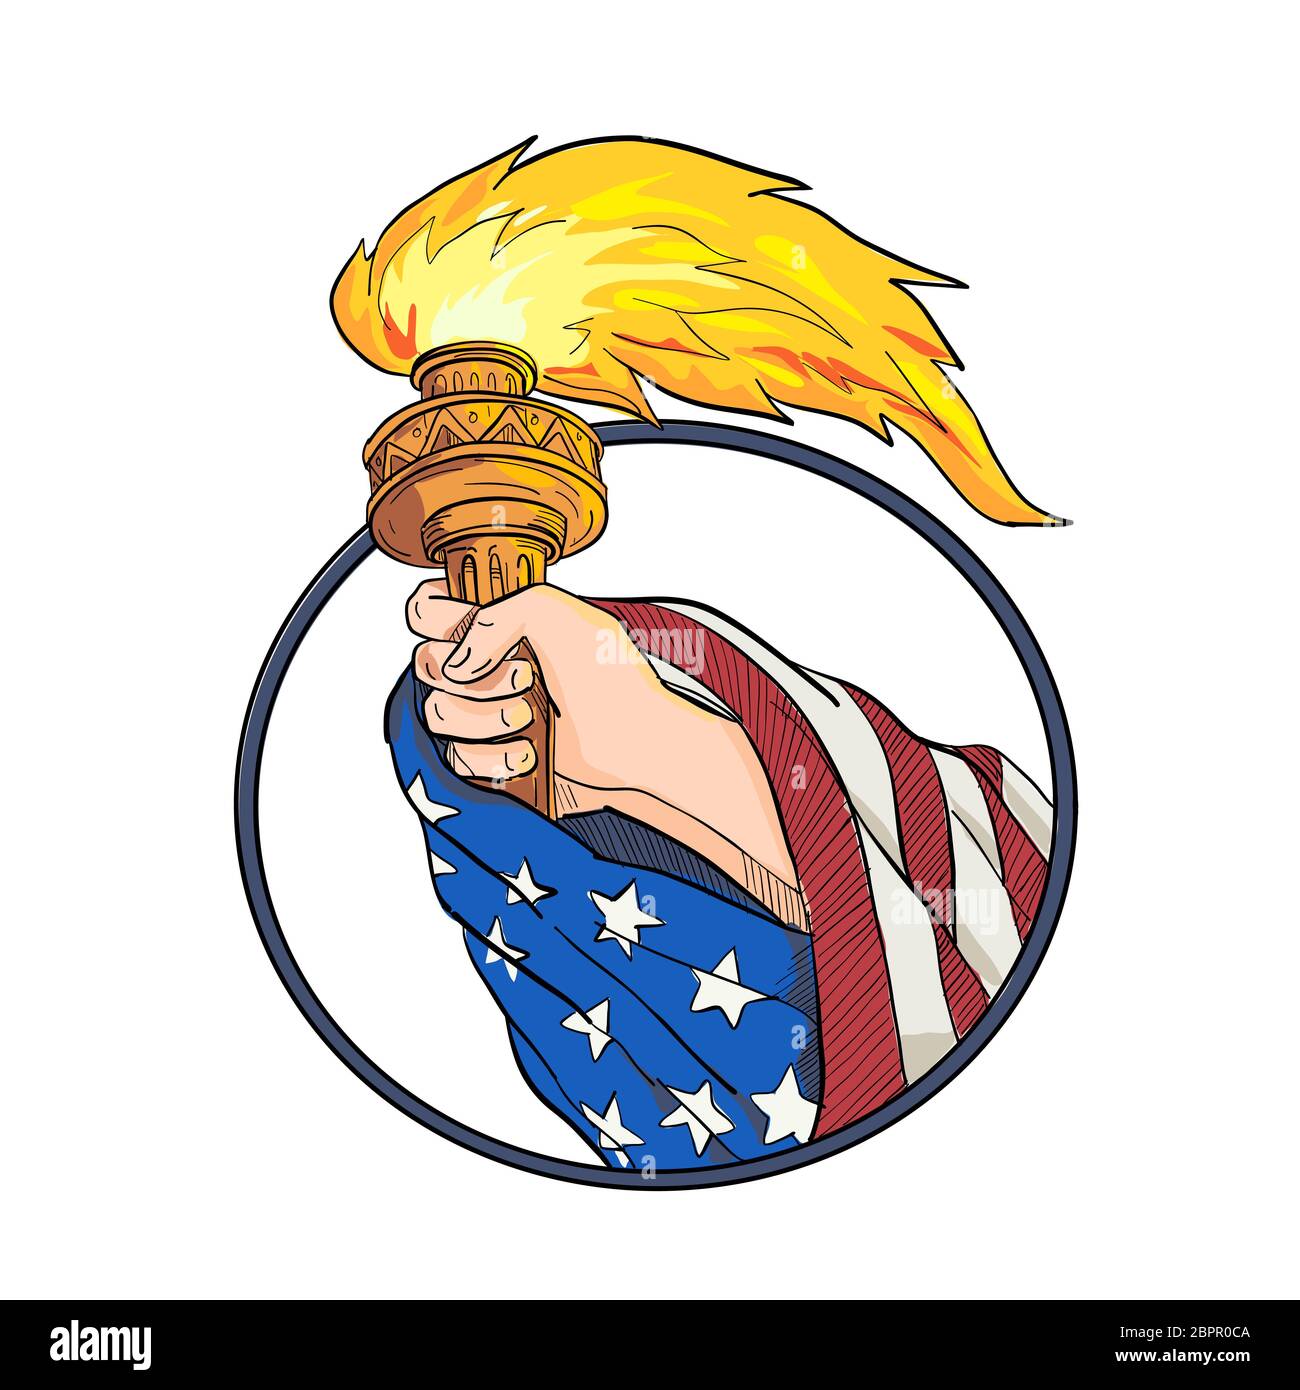 Croquis dessin illustration de style d'une main tenant une torche avec Statue de la liberté USA Américain stars and stripes drapée du drapeau sur le bras situé à l'intérieur o ovale Banque D'Images